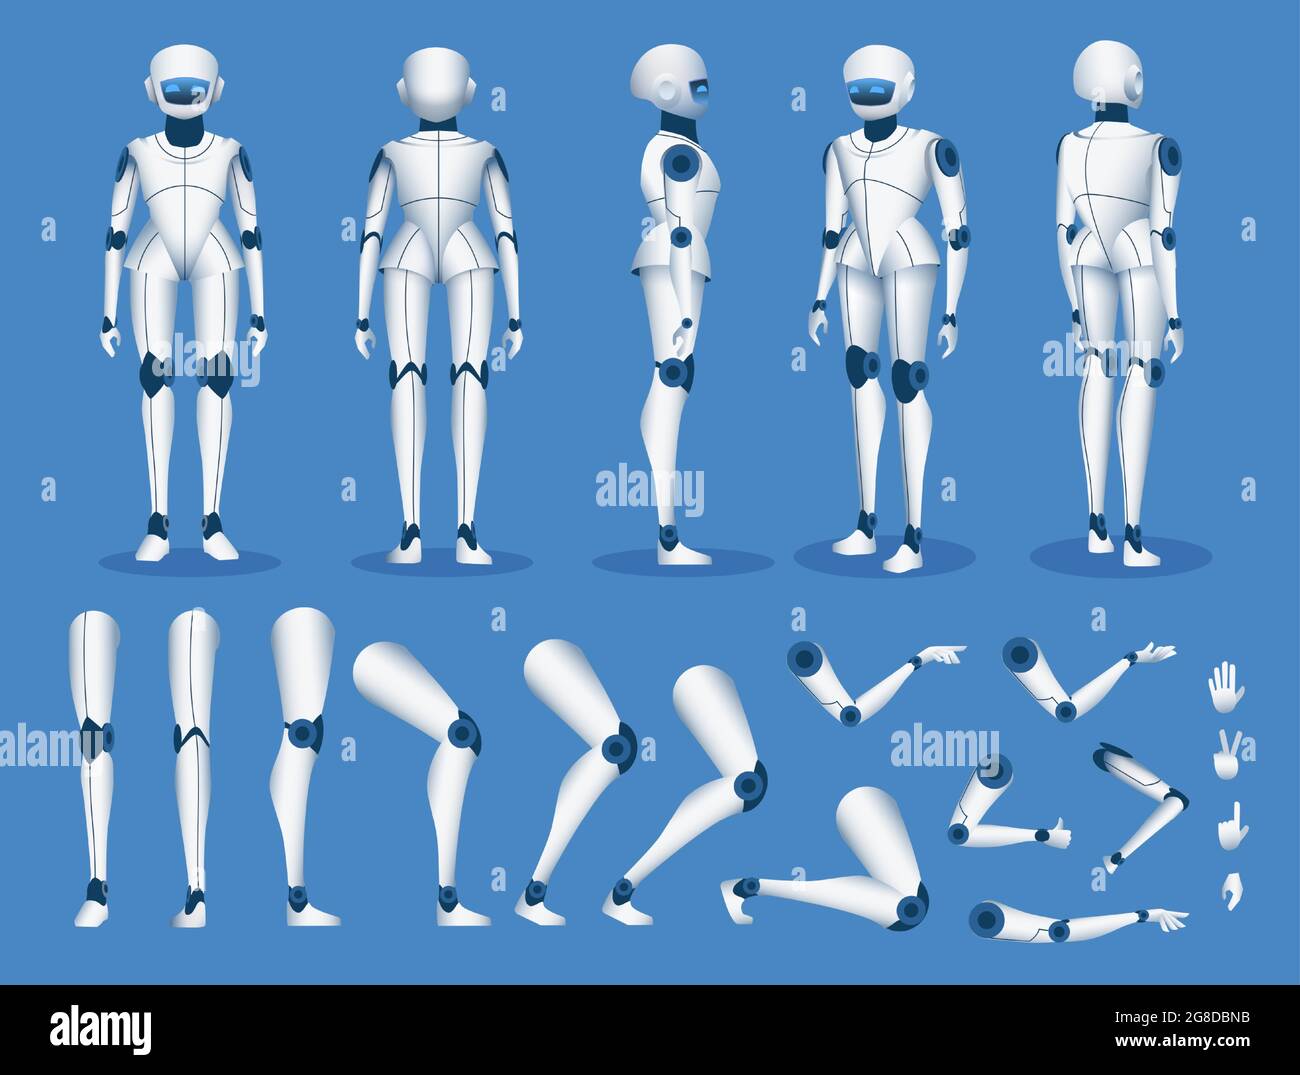 Roboter android-Charakter. Futuristische Cyborg künstliche Intelligenz Maskottchen posiert für Animation. Humanoider Konstruktor-Element-Vektorsatz für Roboter Stock Vektor